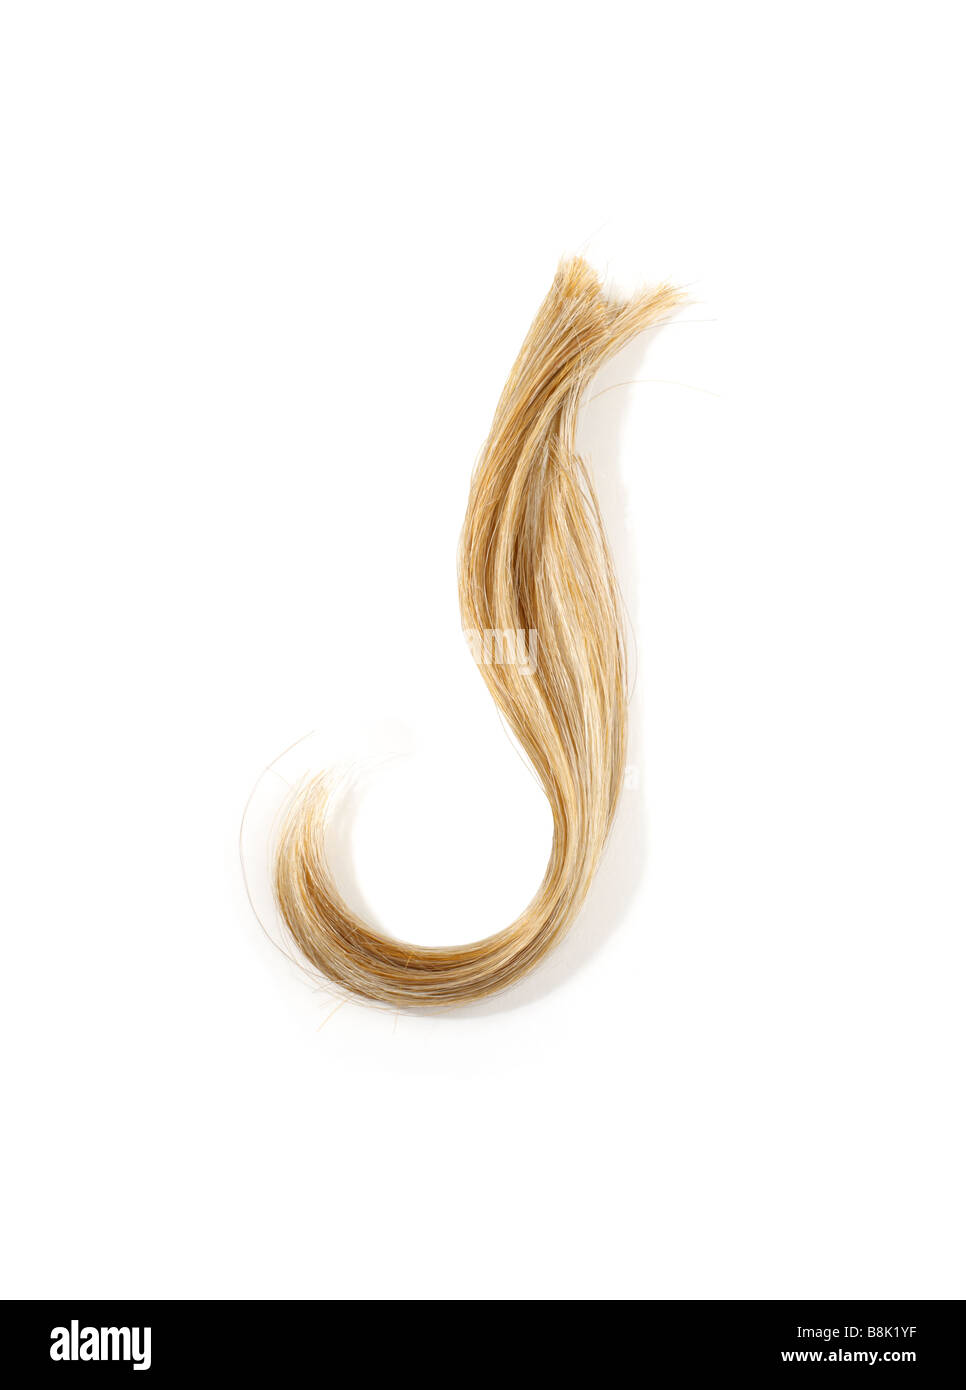 Portrait d'une mèche de cheveux blonds Banque D'Images